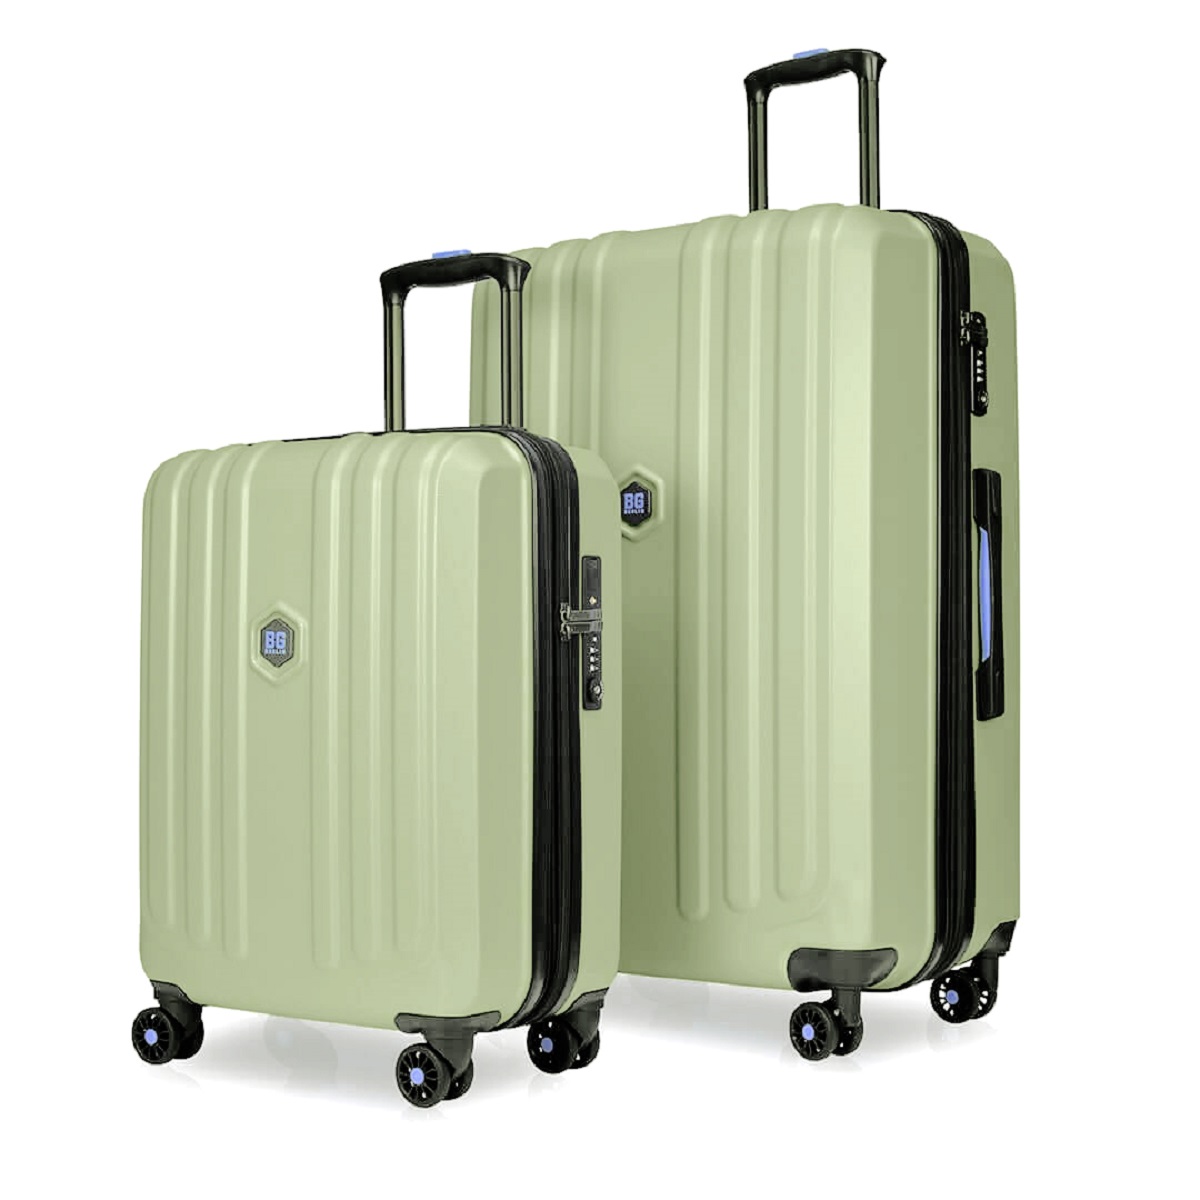 Enduro Luggage - 2er Kofferset Mint - Buy one get one free von BG Berlin